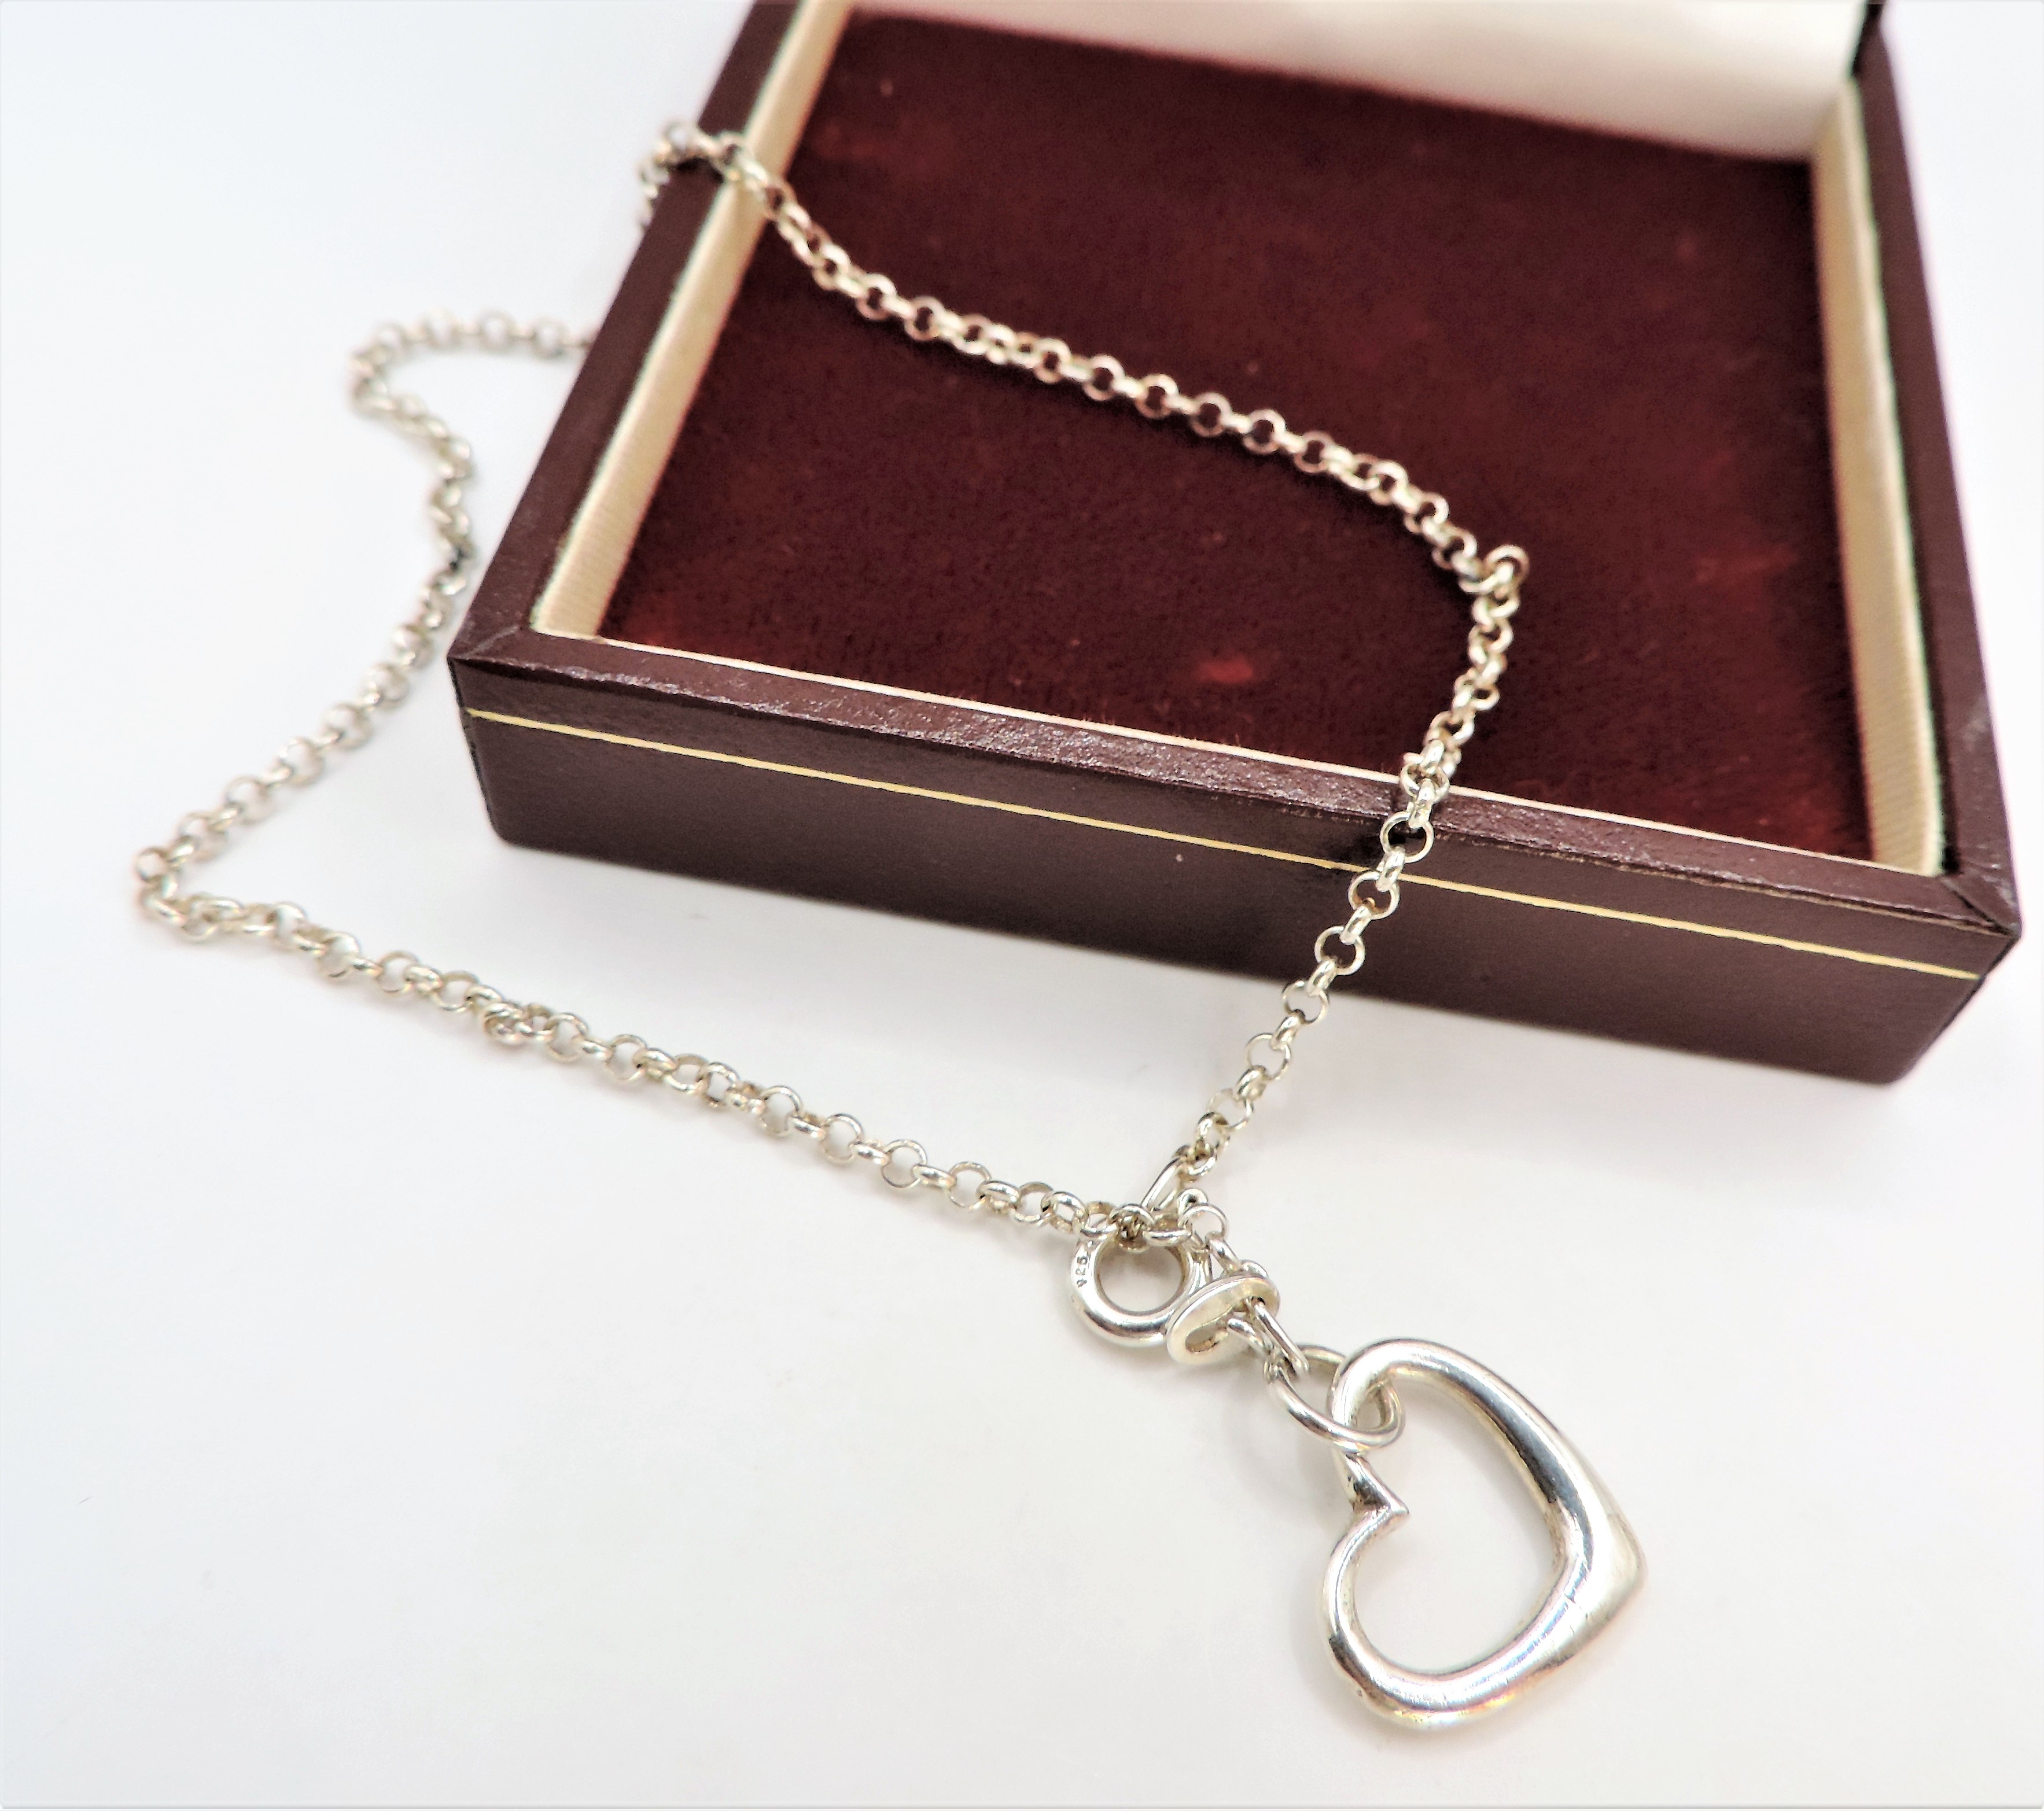 Sterling Silver Heart Charm Bracelet. A fine quality Heart charm bracelet in sterling silver 23cm